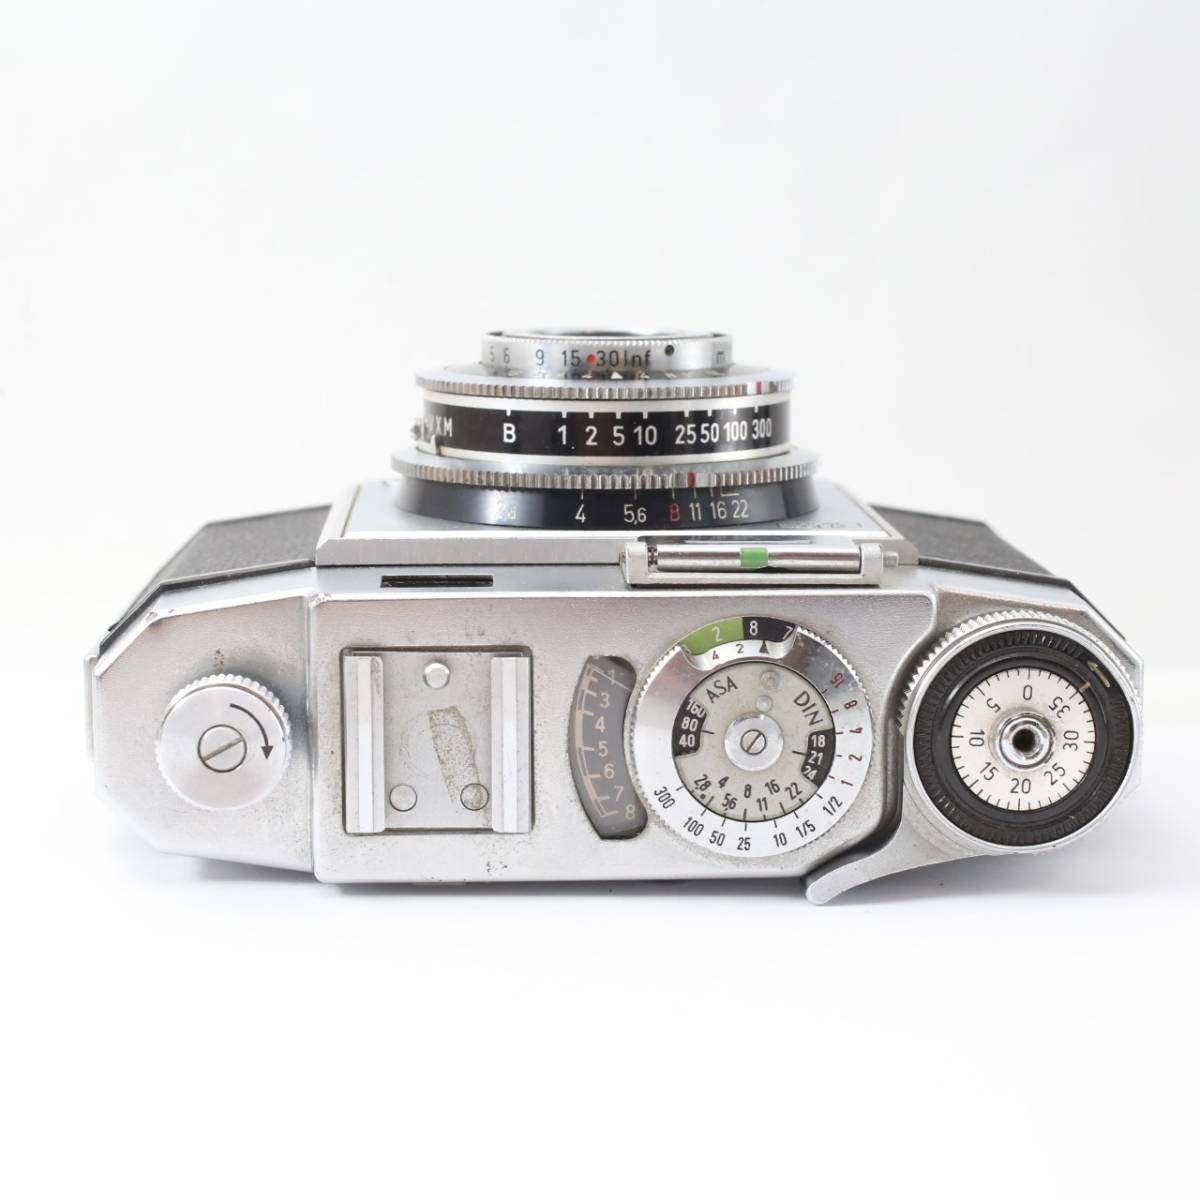 ZEISS IKON 45mm F2.8 film camera (S517)